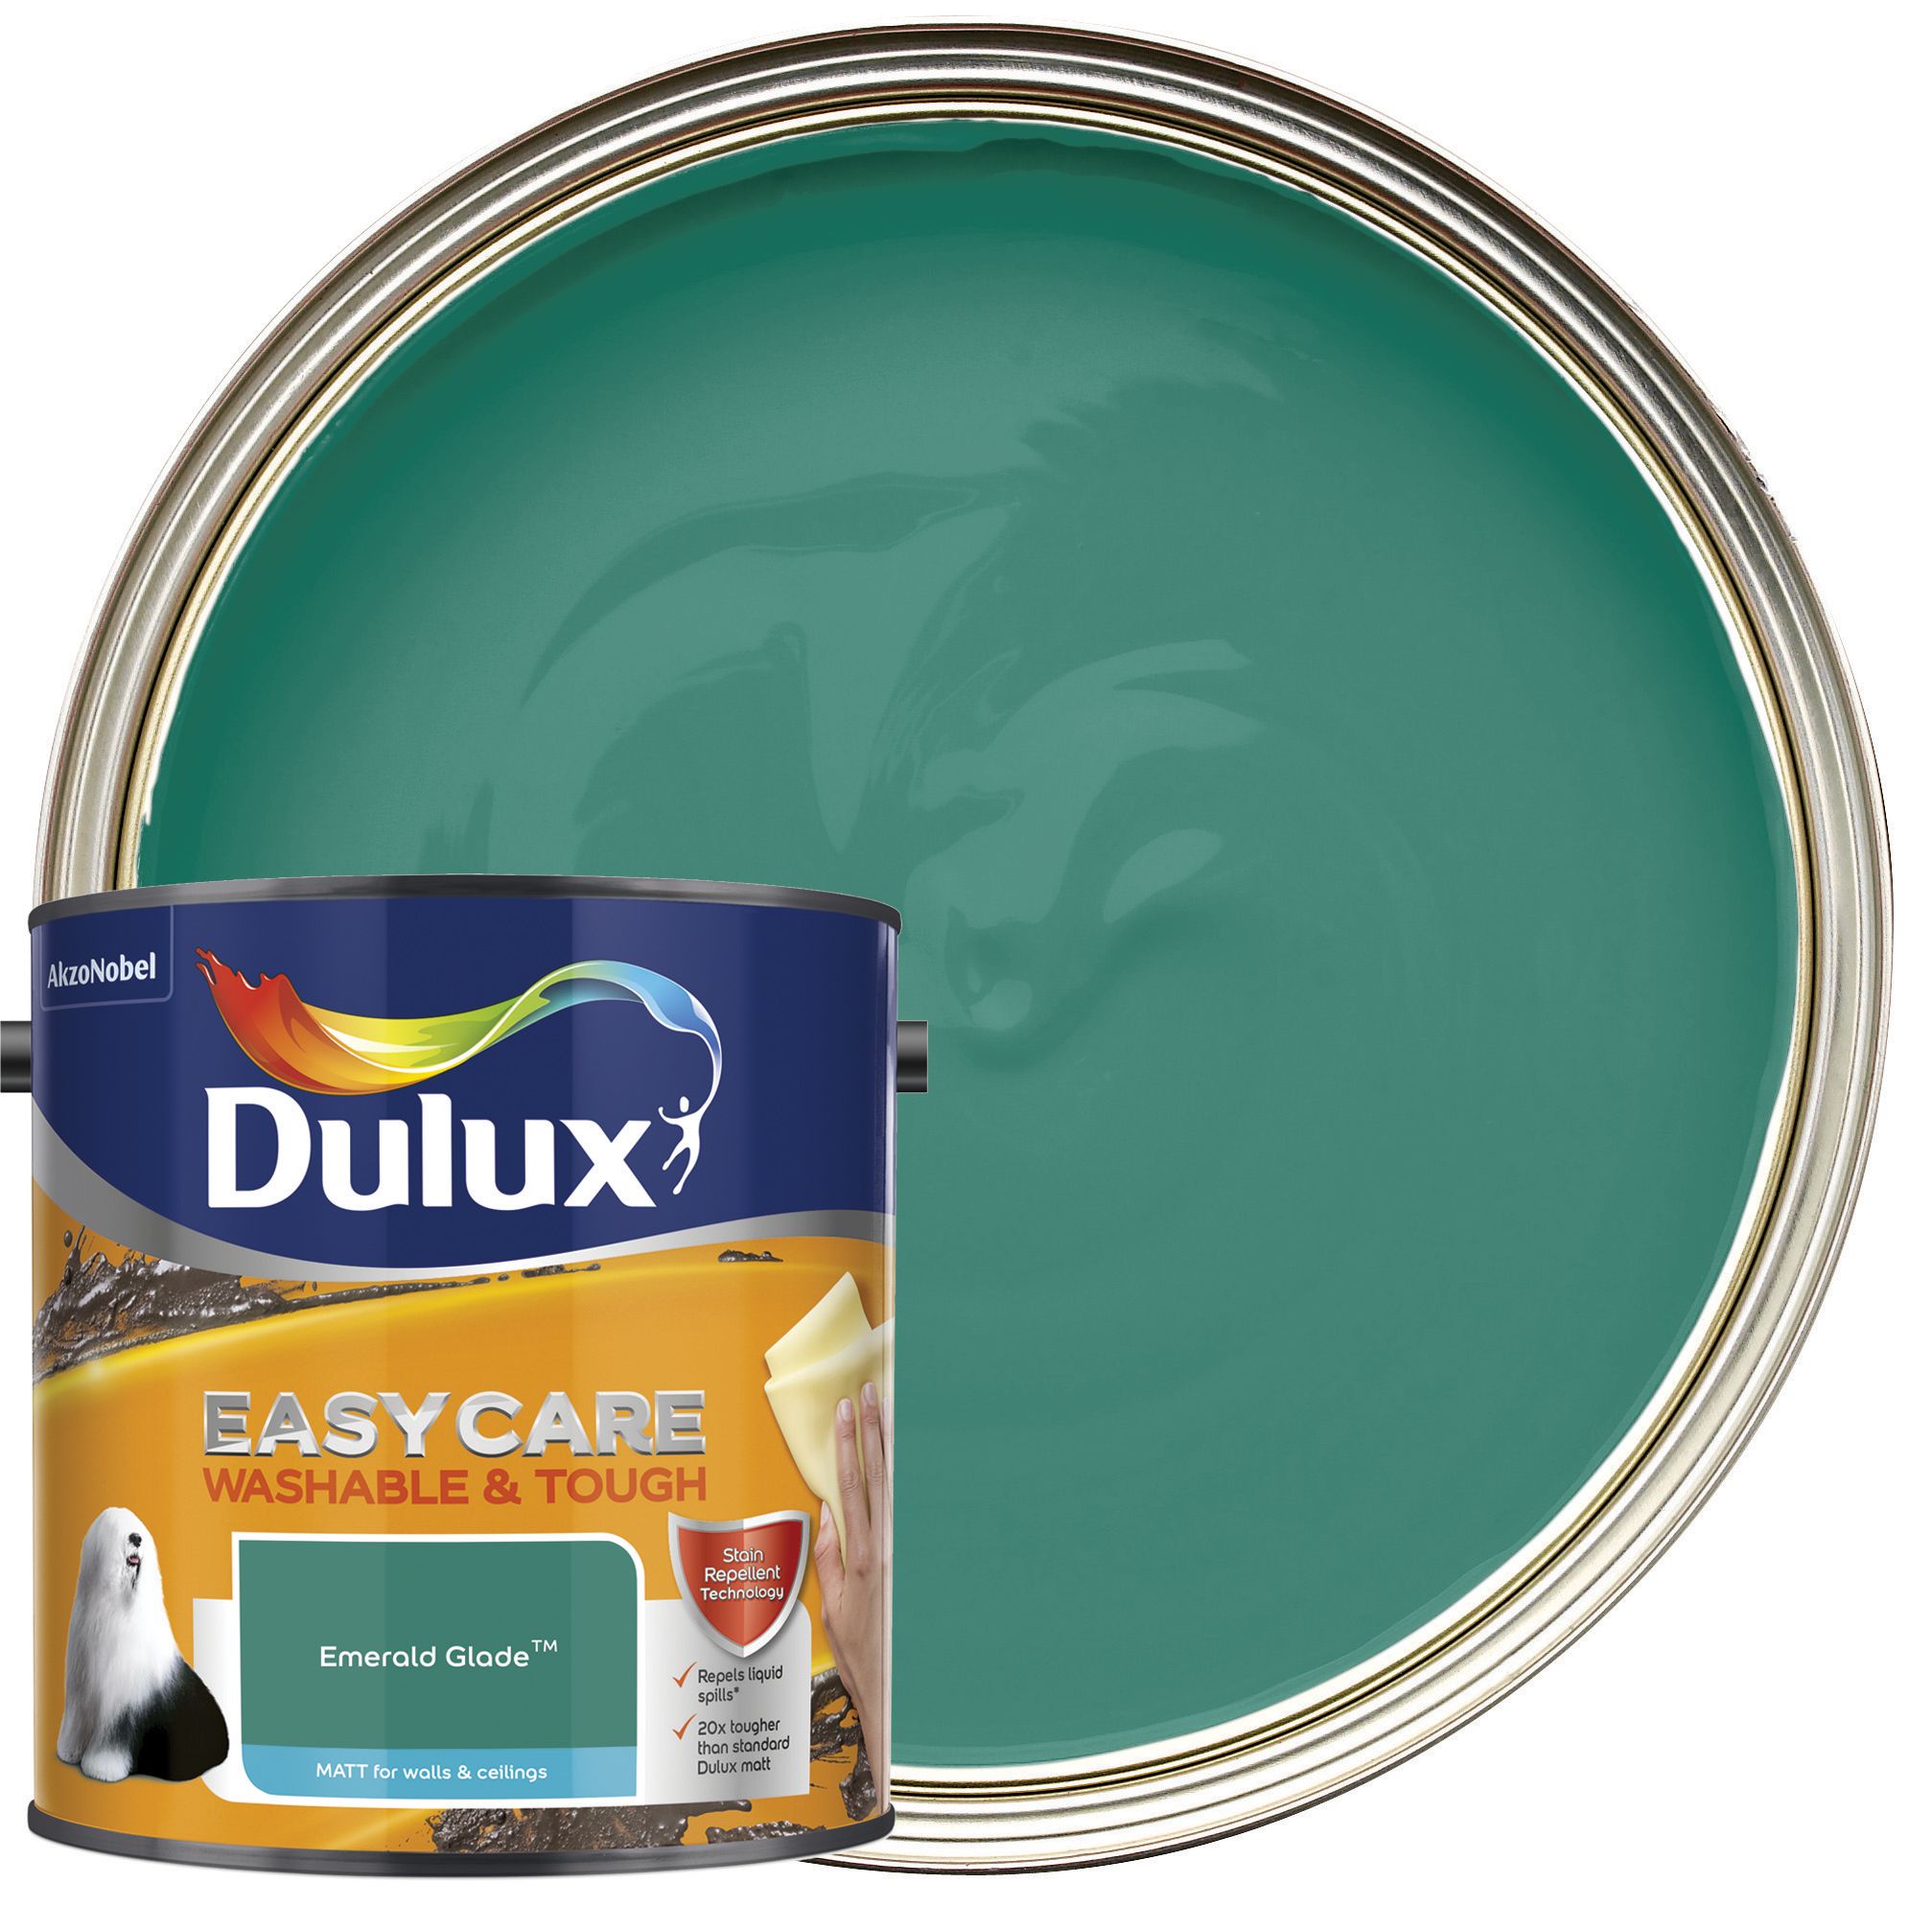 Image of Dulux Easycare Washable & Tough Matt Emulsion Paint - Emerald Glade - 2.5L